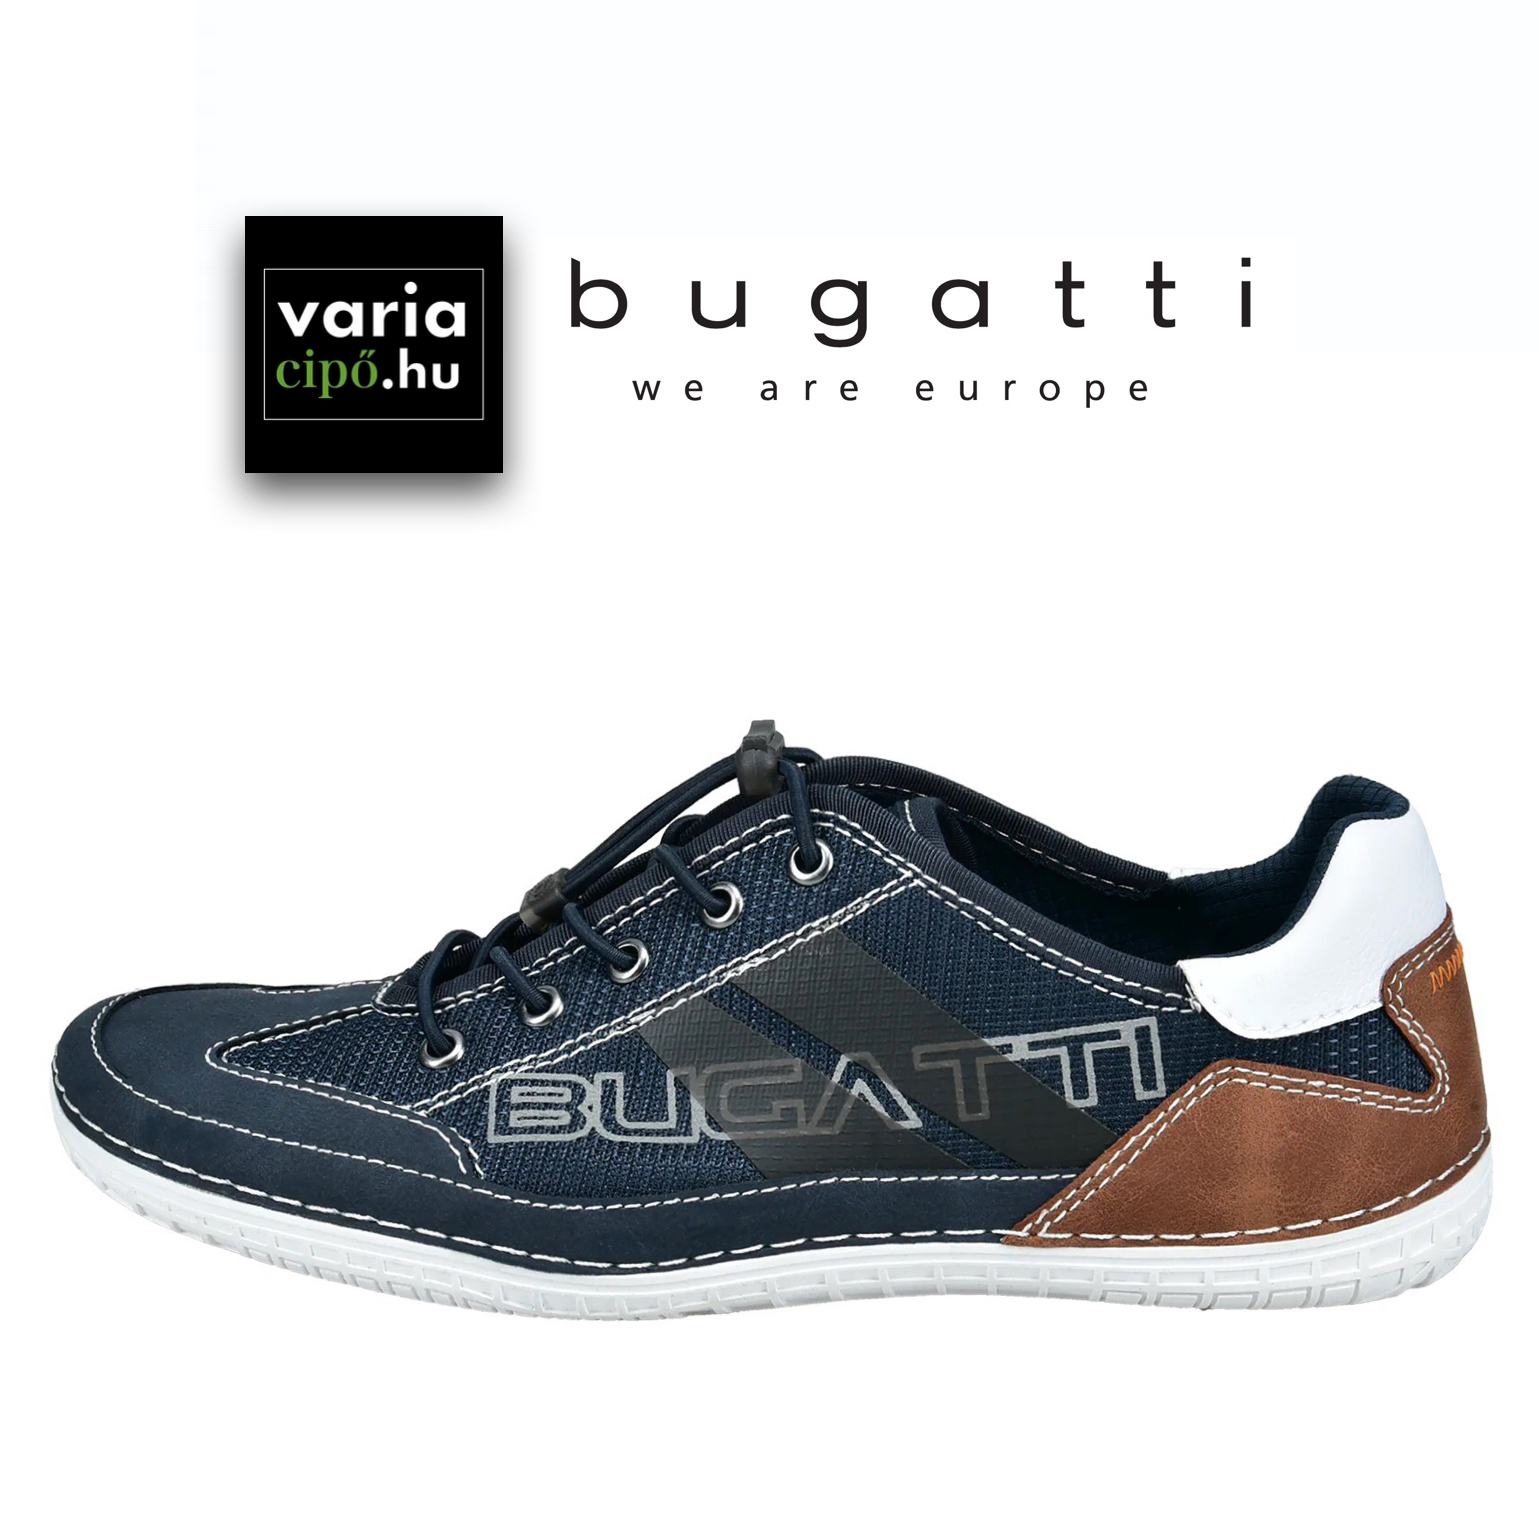 Sportos Bugatti nyári cipő, 321-AFF02-5000 4100 dark blue